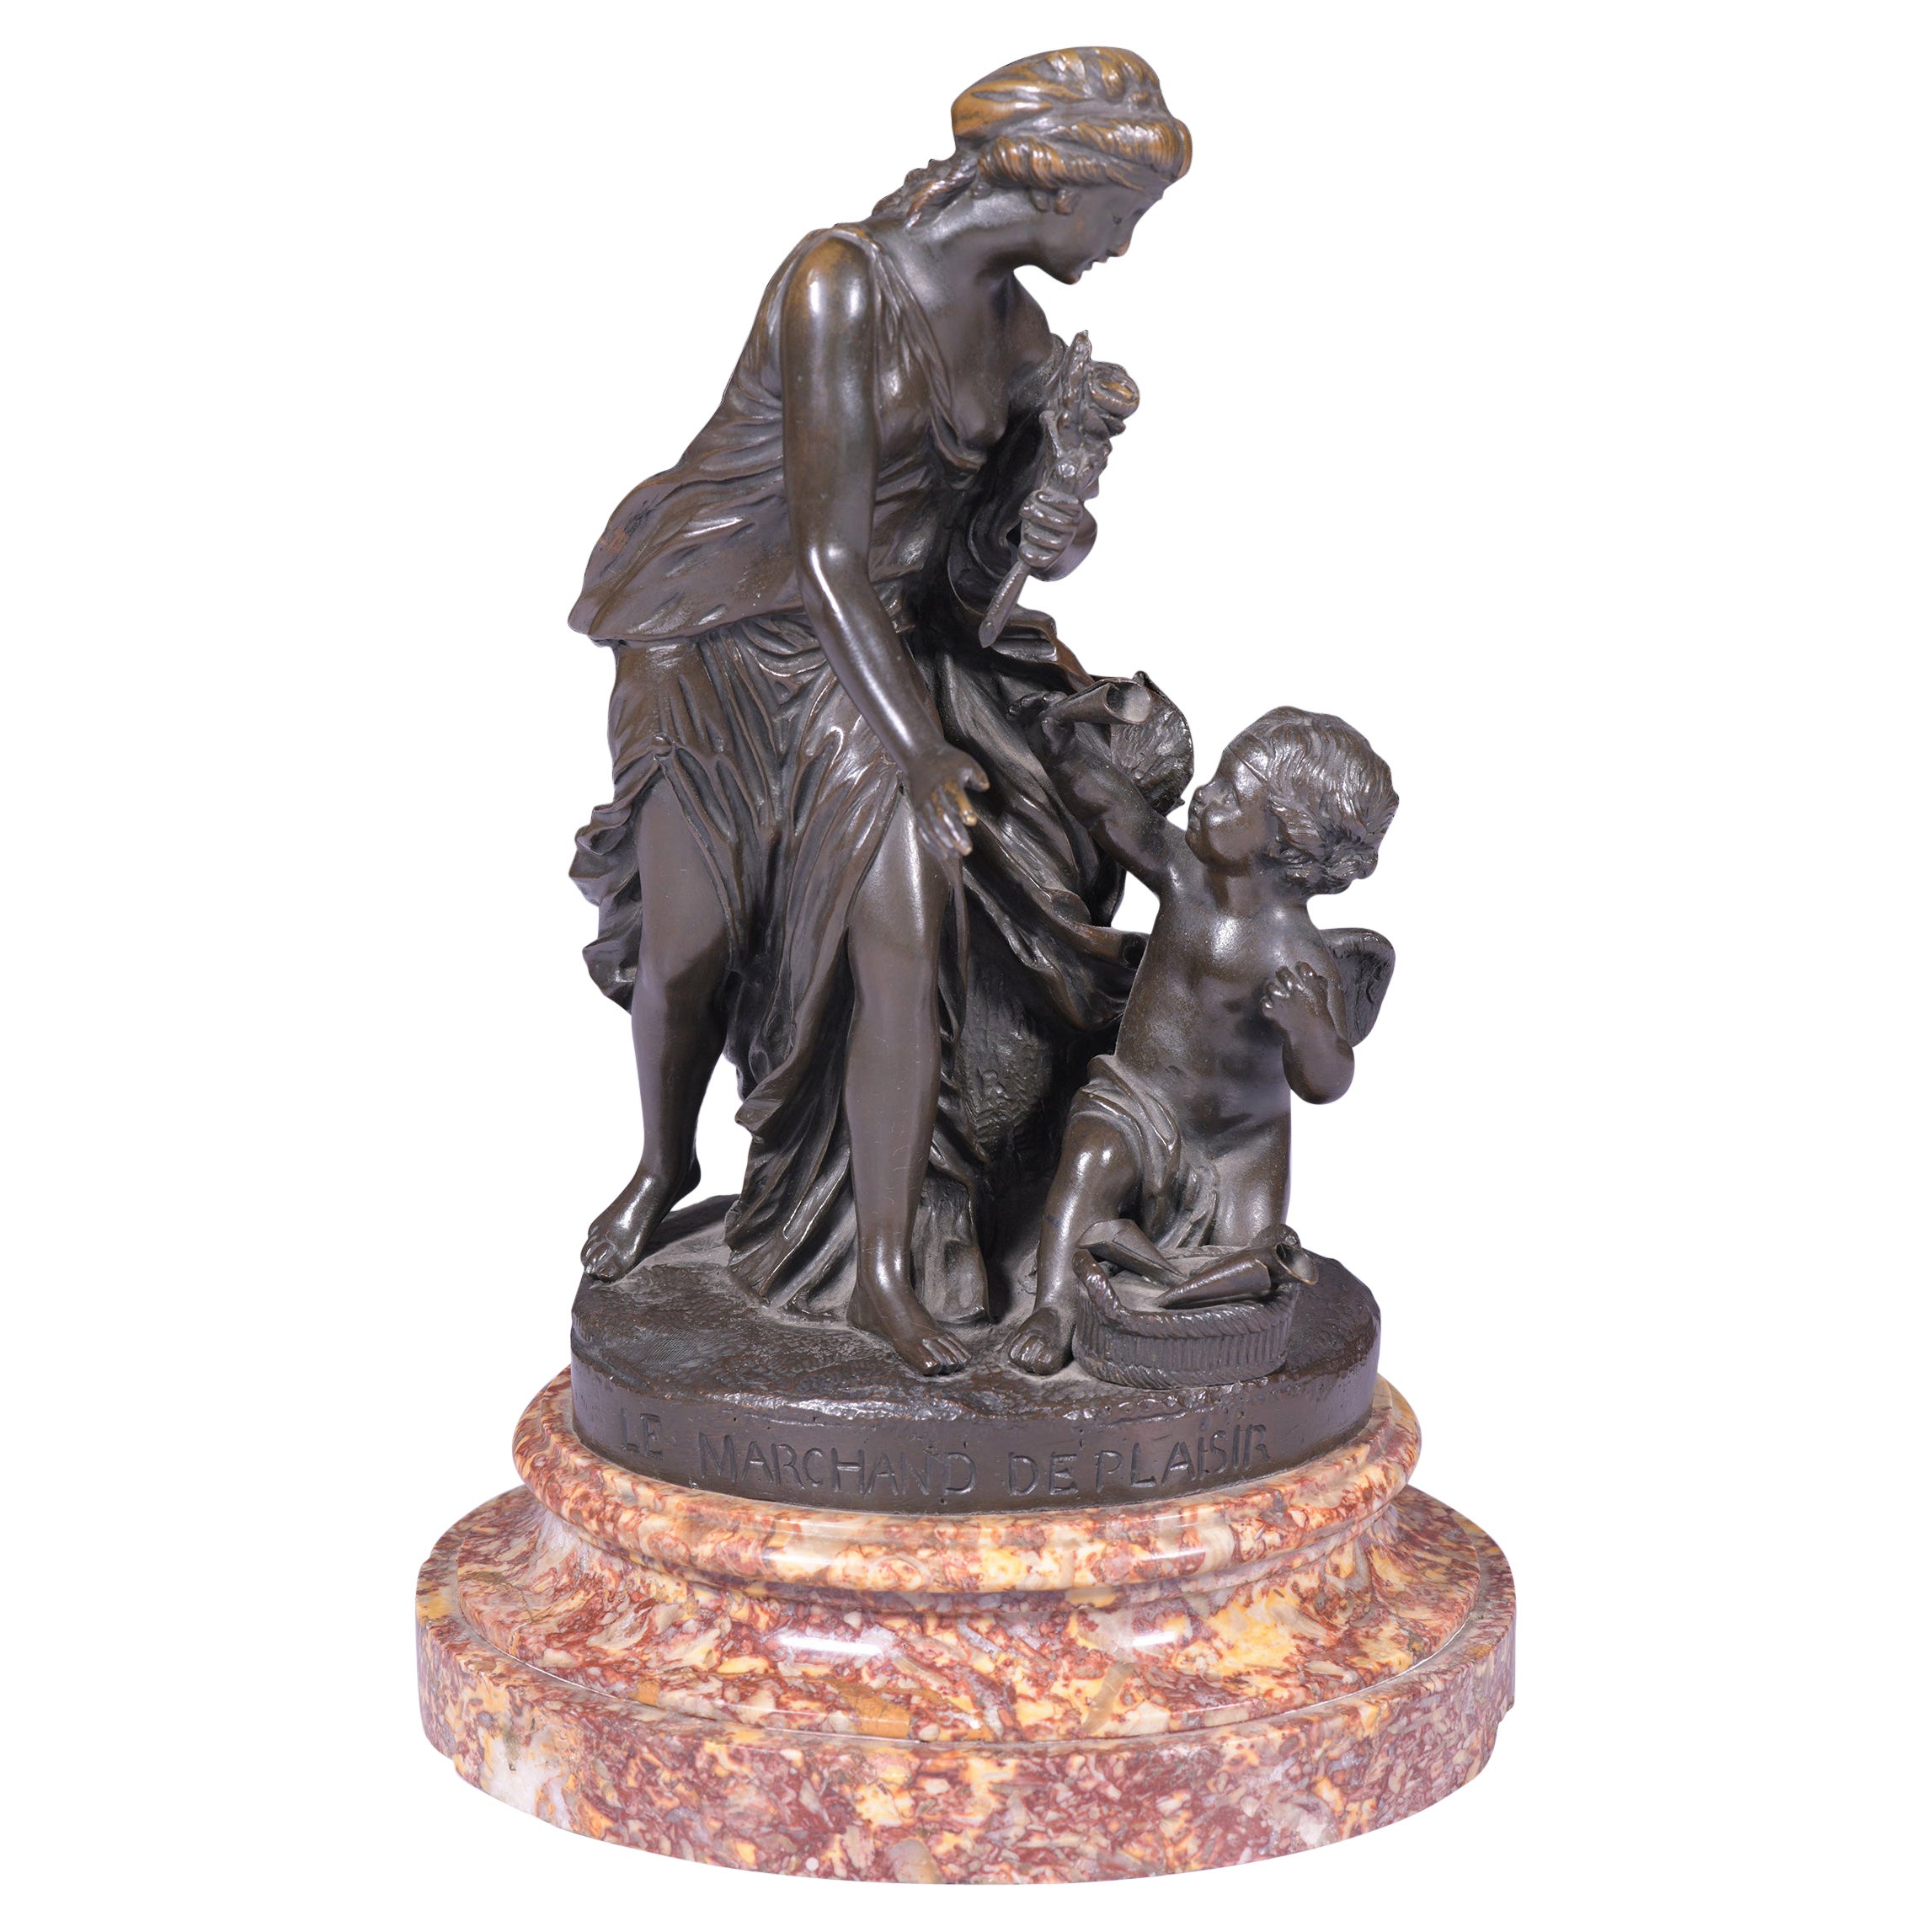 Groupe en bronze classique français du 19ème siècle signé Pigal « Le Merchand de Plaisir ».